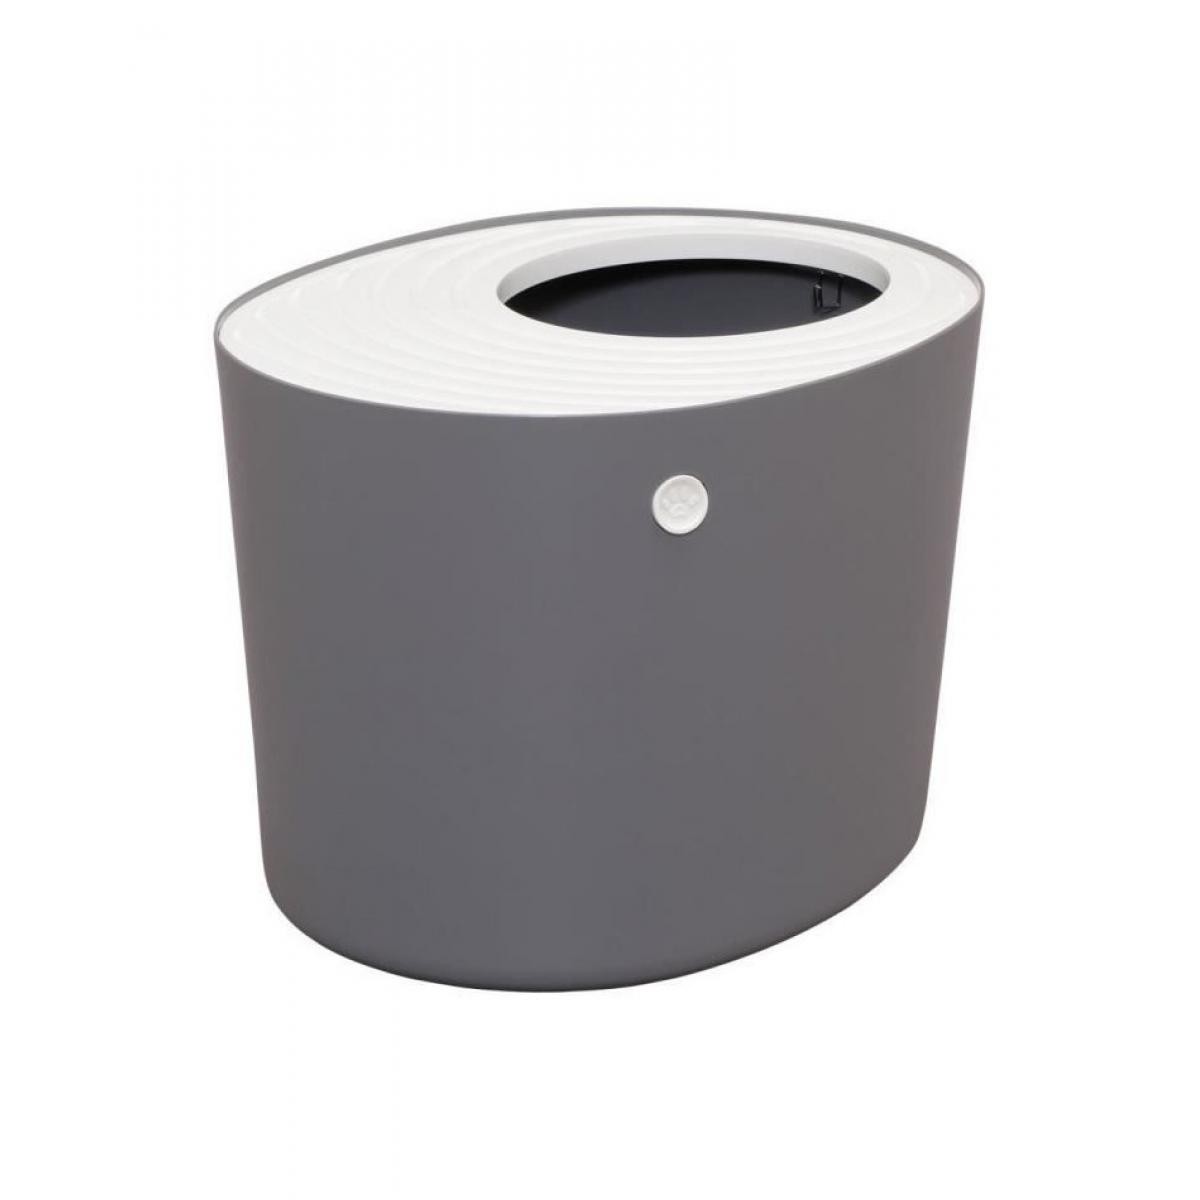 Iris Ohyama - IRIS OHYAMA Maison de toilette Top Entry Cat Litter Box avec couvercle - PUNT-530 - Plastique - 53 x 41 x 37 cm - Gris - Pour... - Litière pour chat